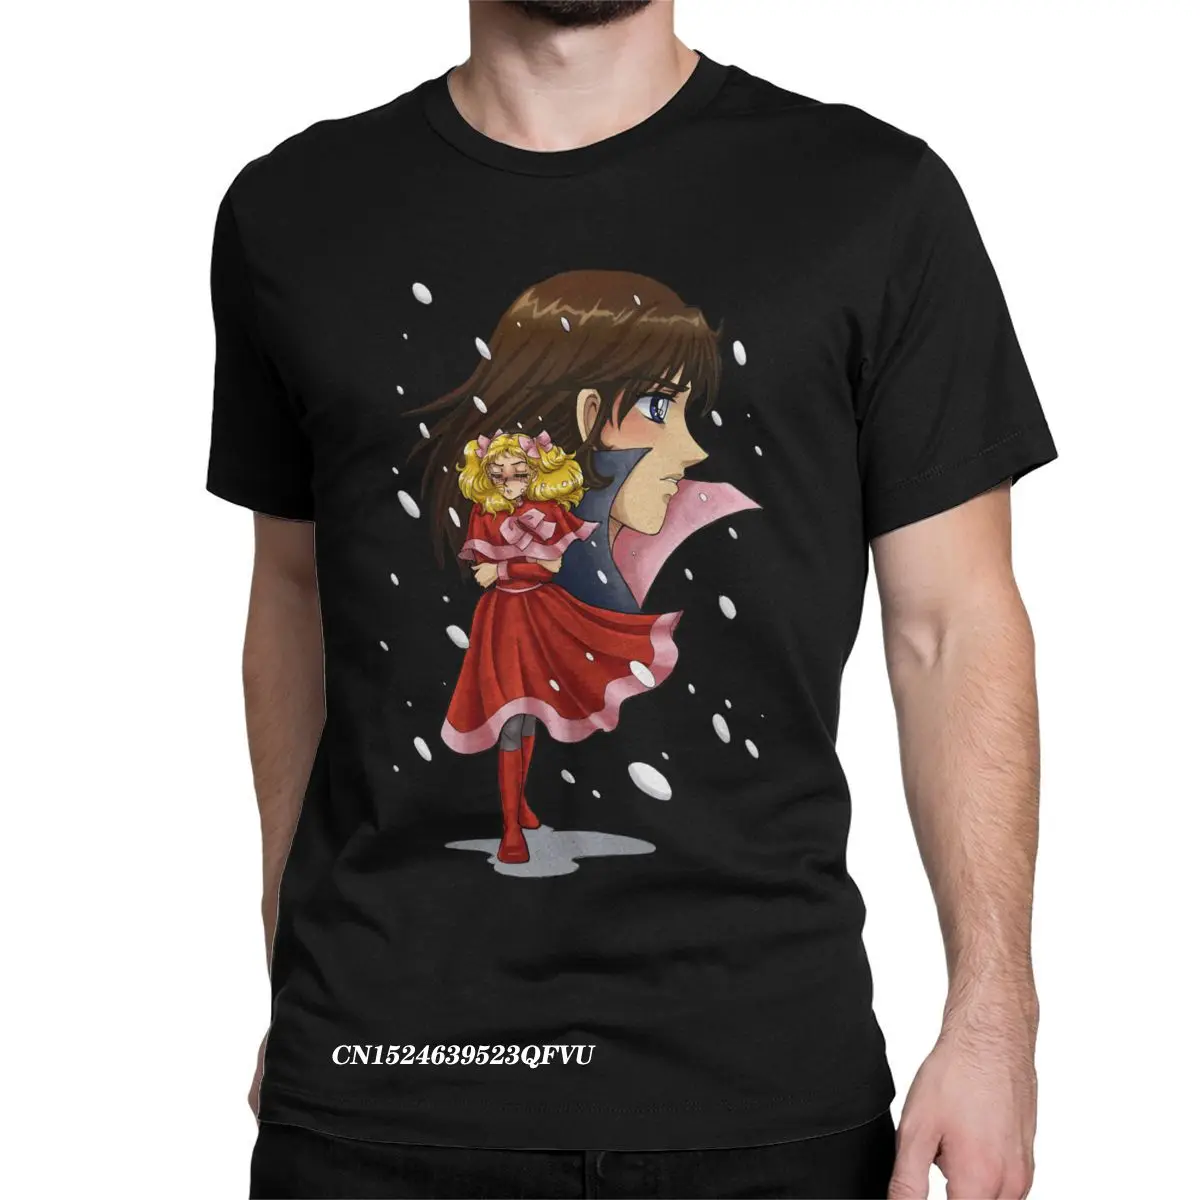 Männer frauen T Shirt Candy candy Terry Schnee Beiläufige Reine Baumwolle T-shirt Anime Kawaii Manga Tops T Shirts rundhals Tops